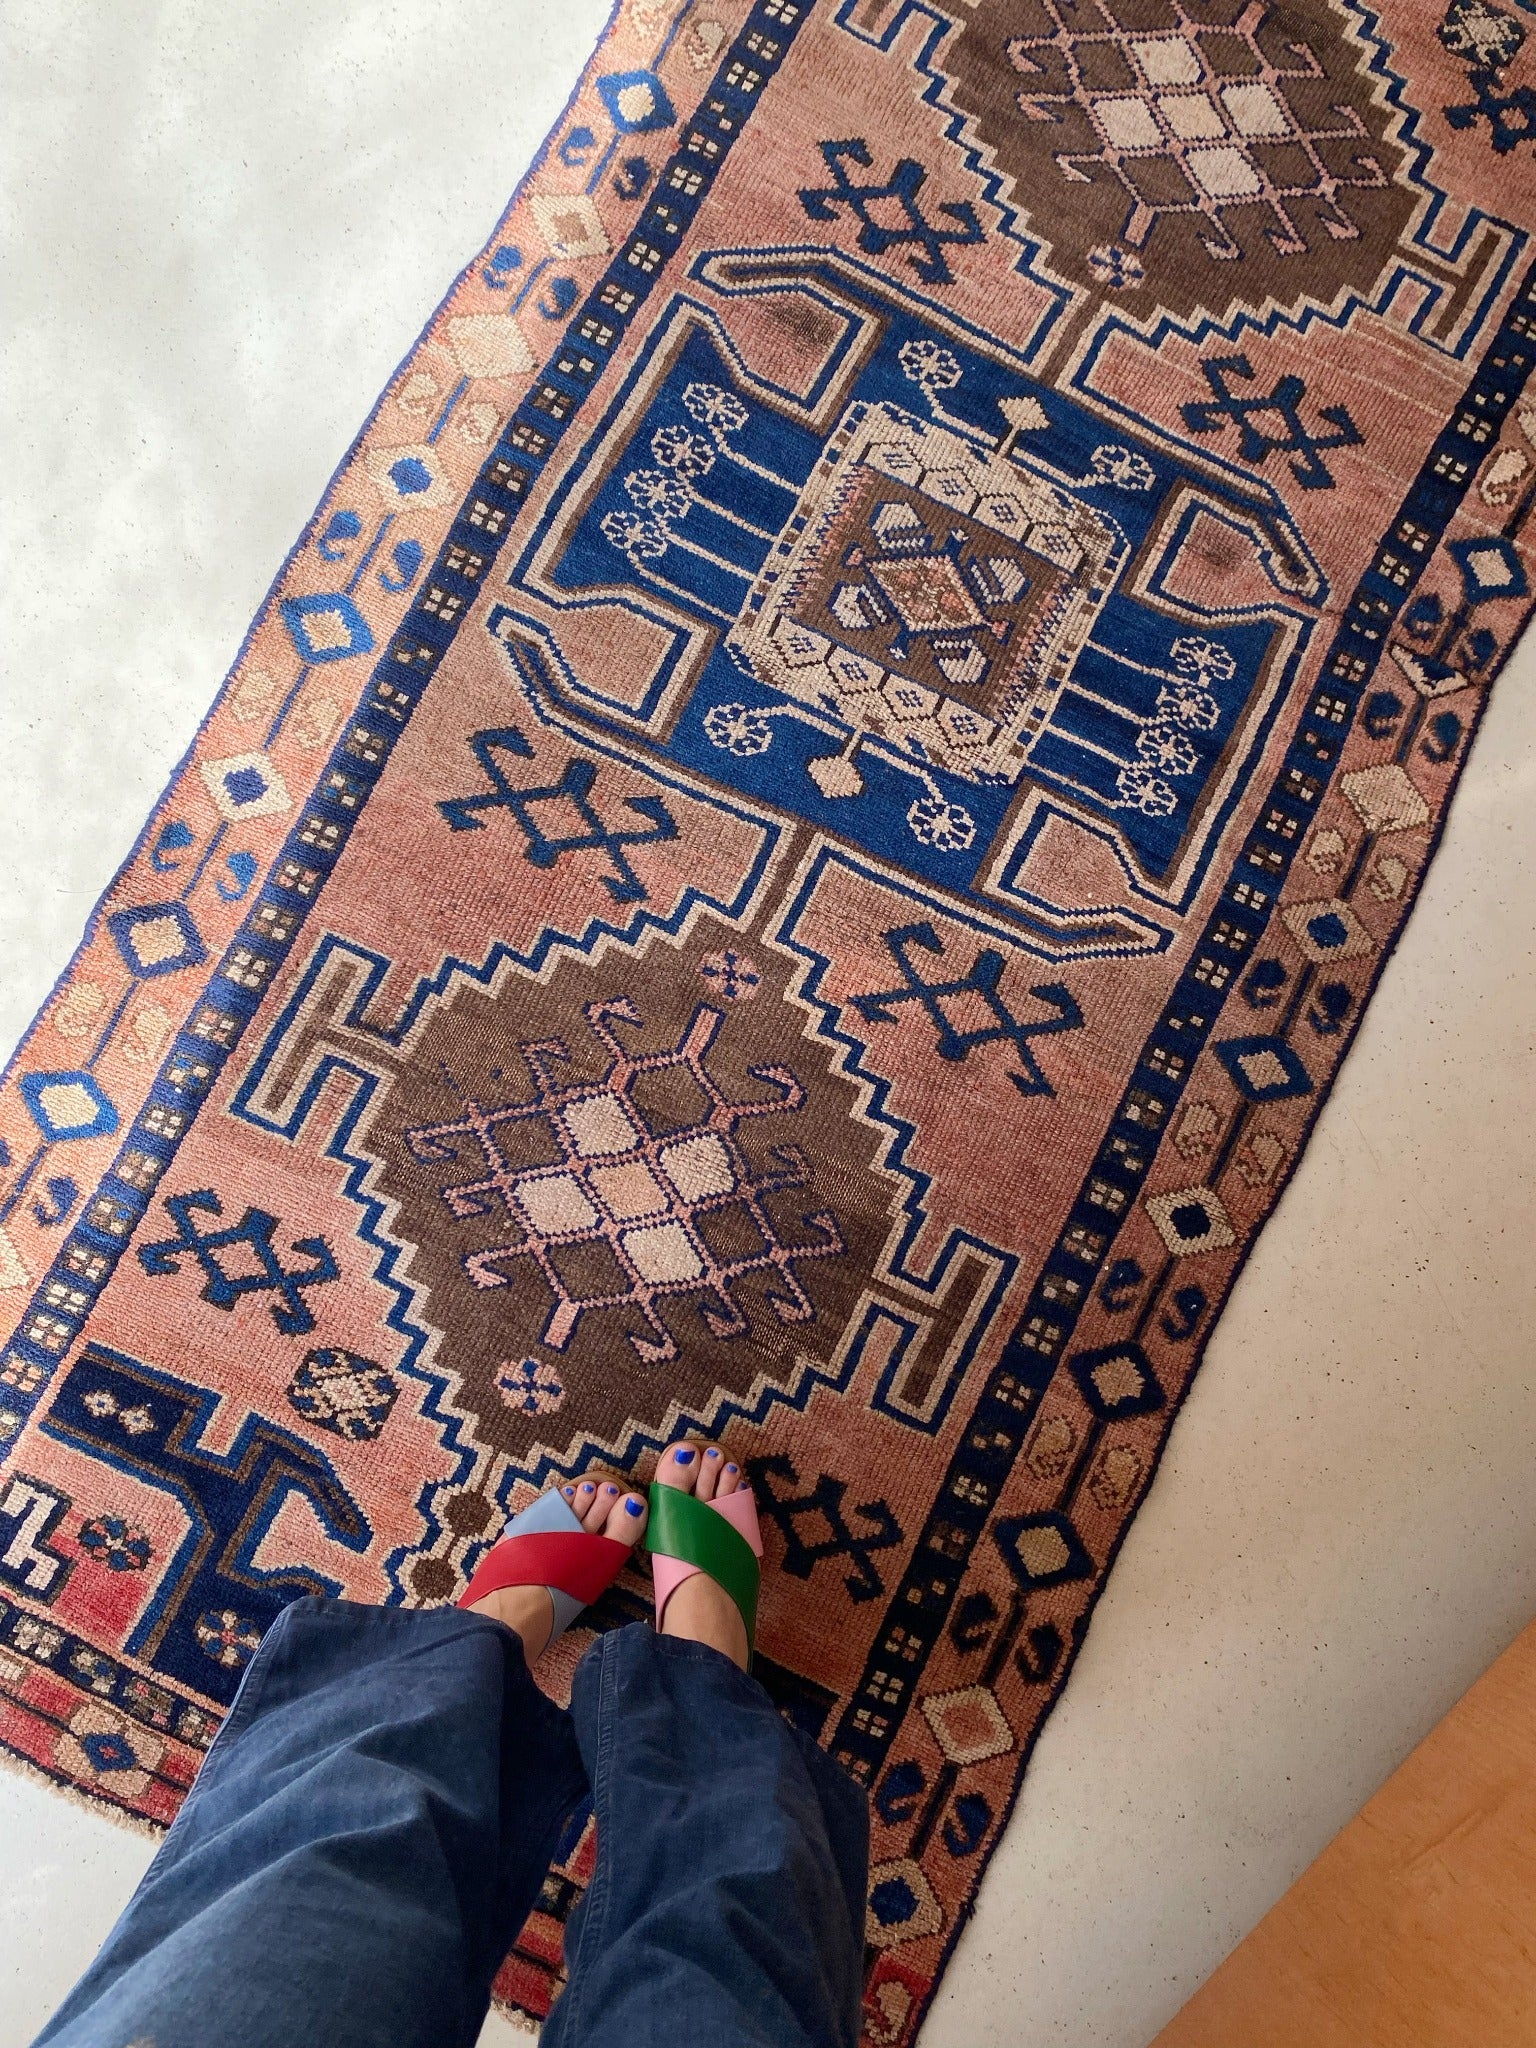 See Details of multi-color vintage rug